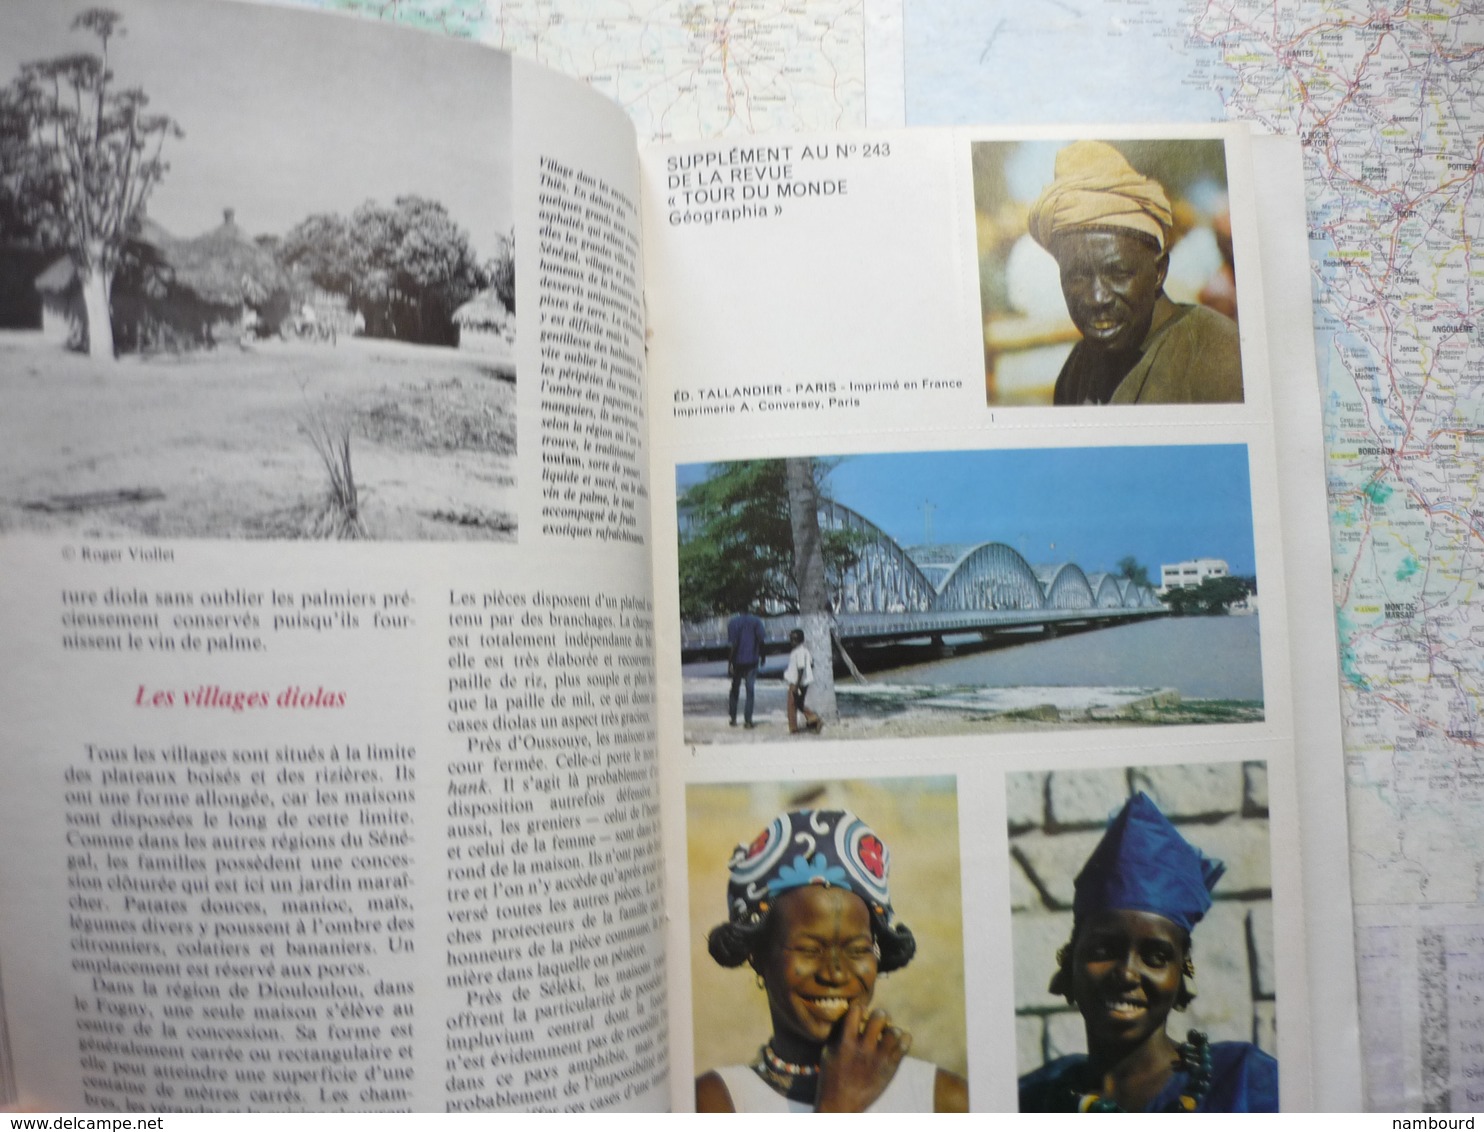 Geographia Tour du Monde Llivia (Espagne) / Manaus (Brésil) /République du Sénégal N°243 Décembre 1979